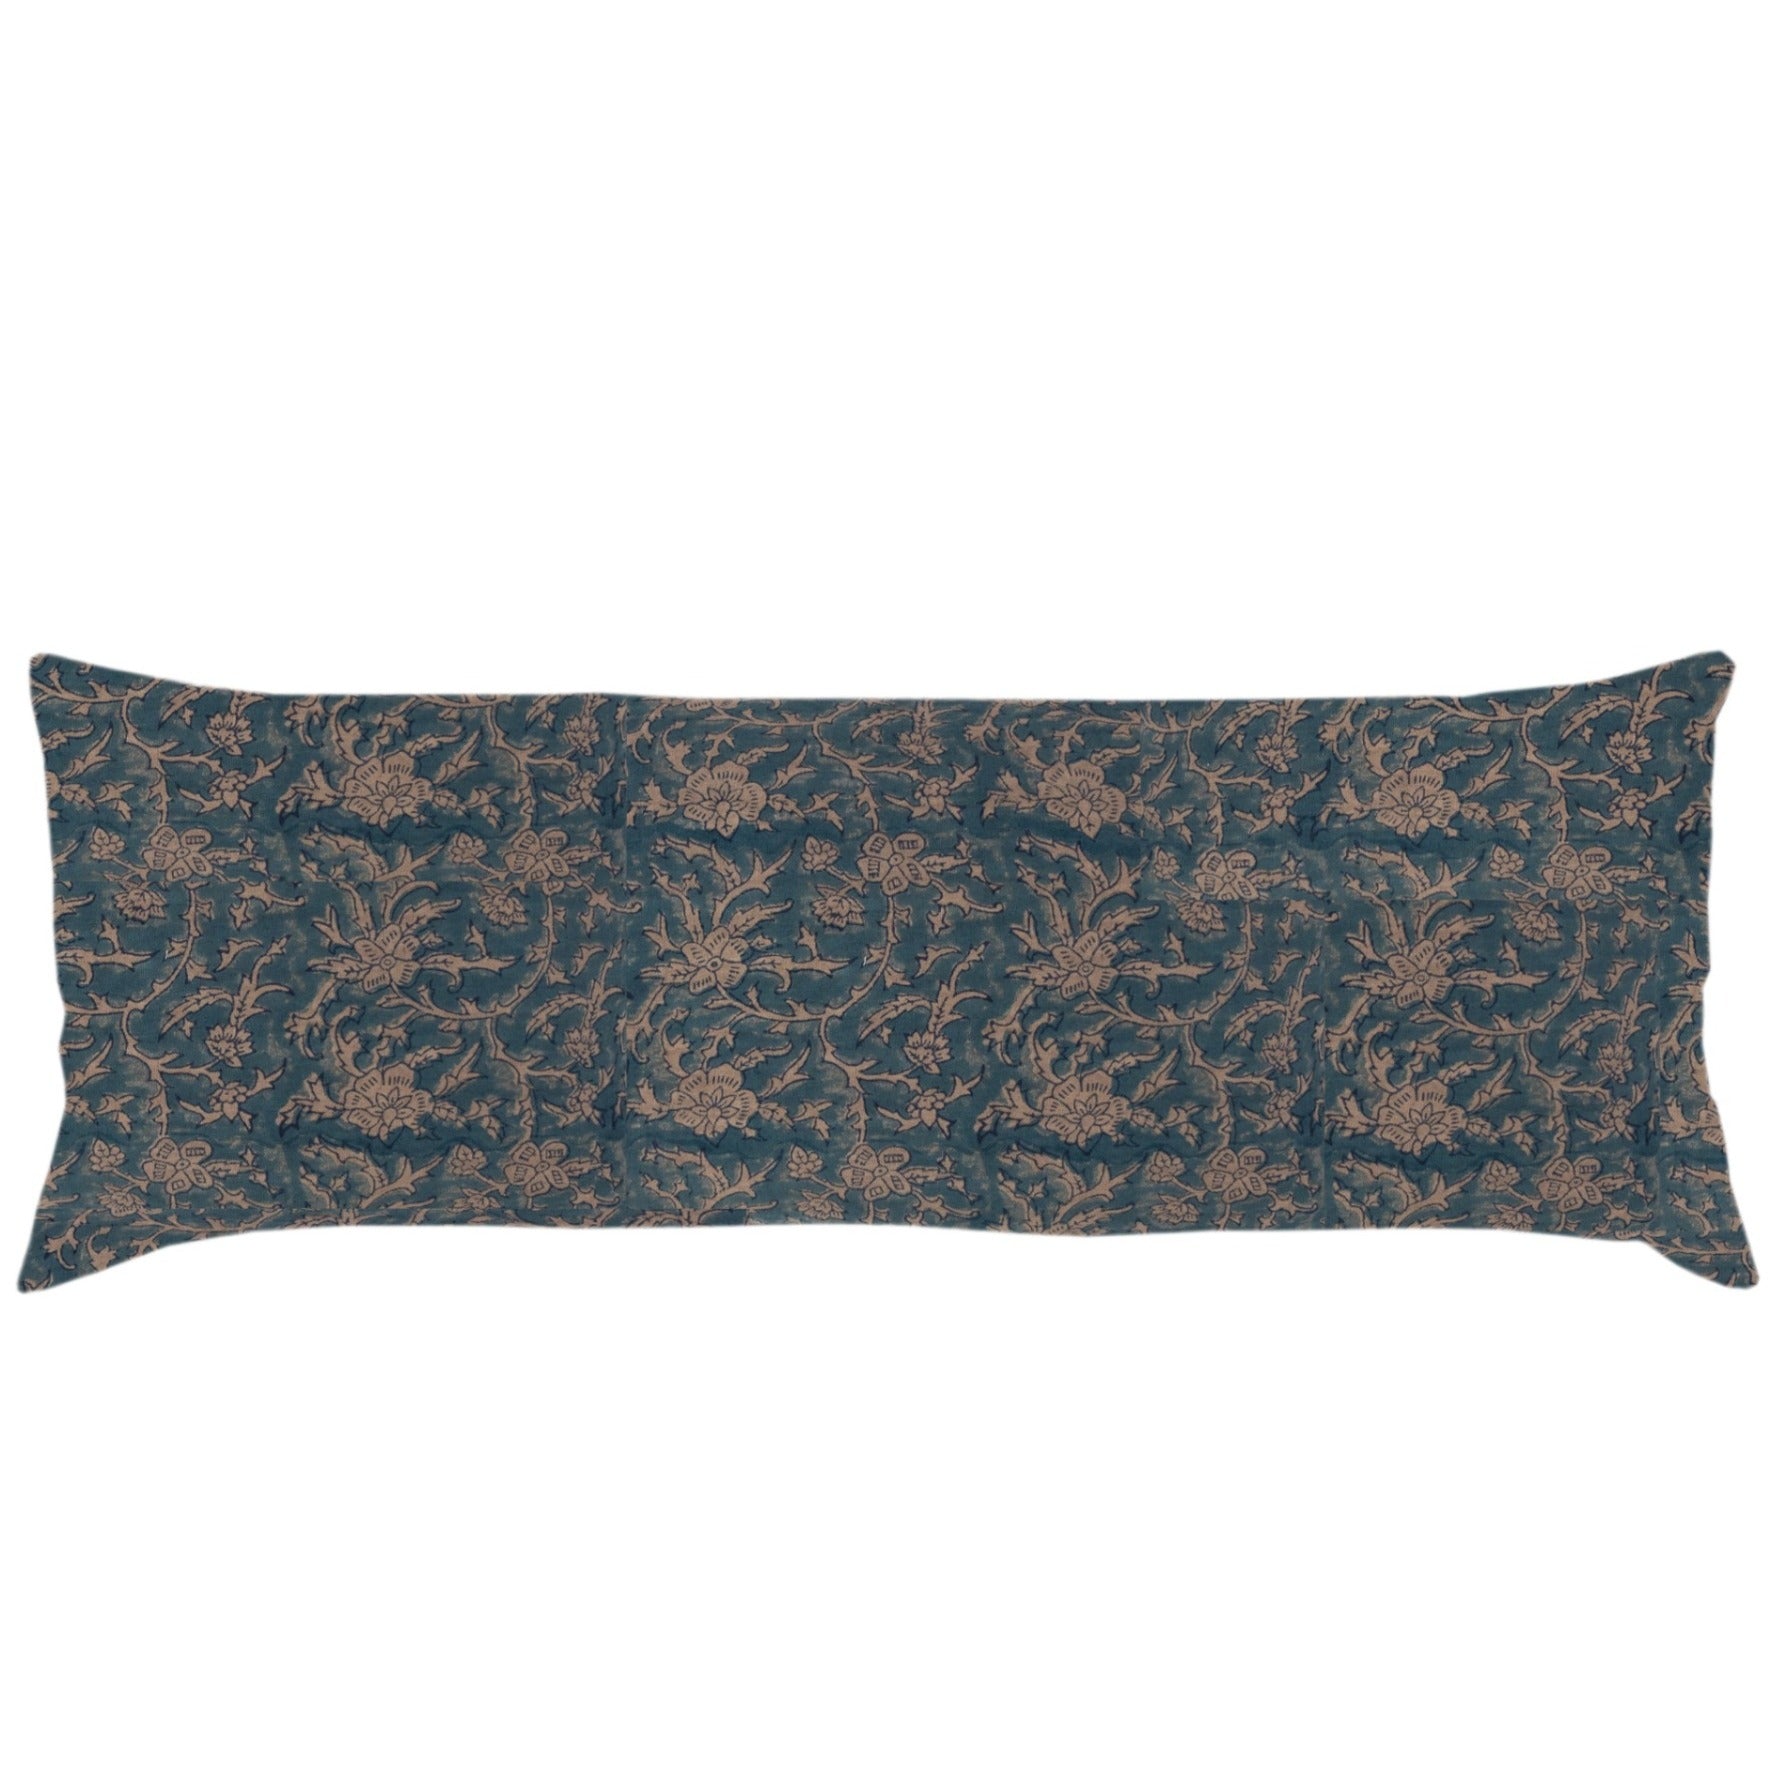 Brittany Blue Tan Linen Pillow